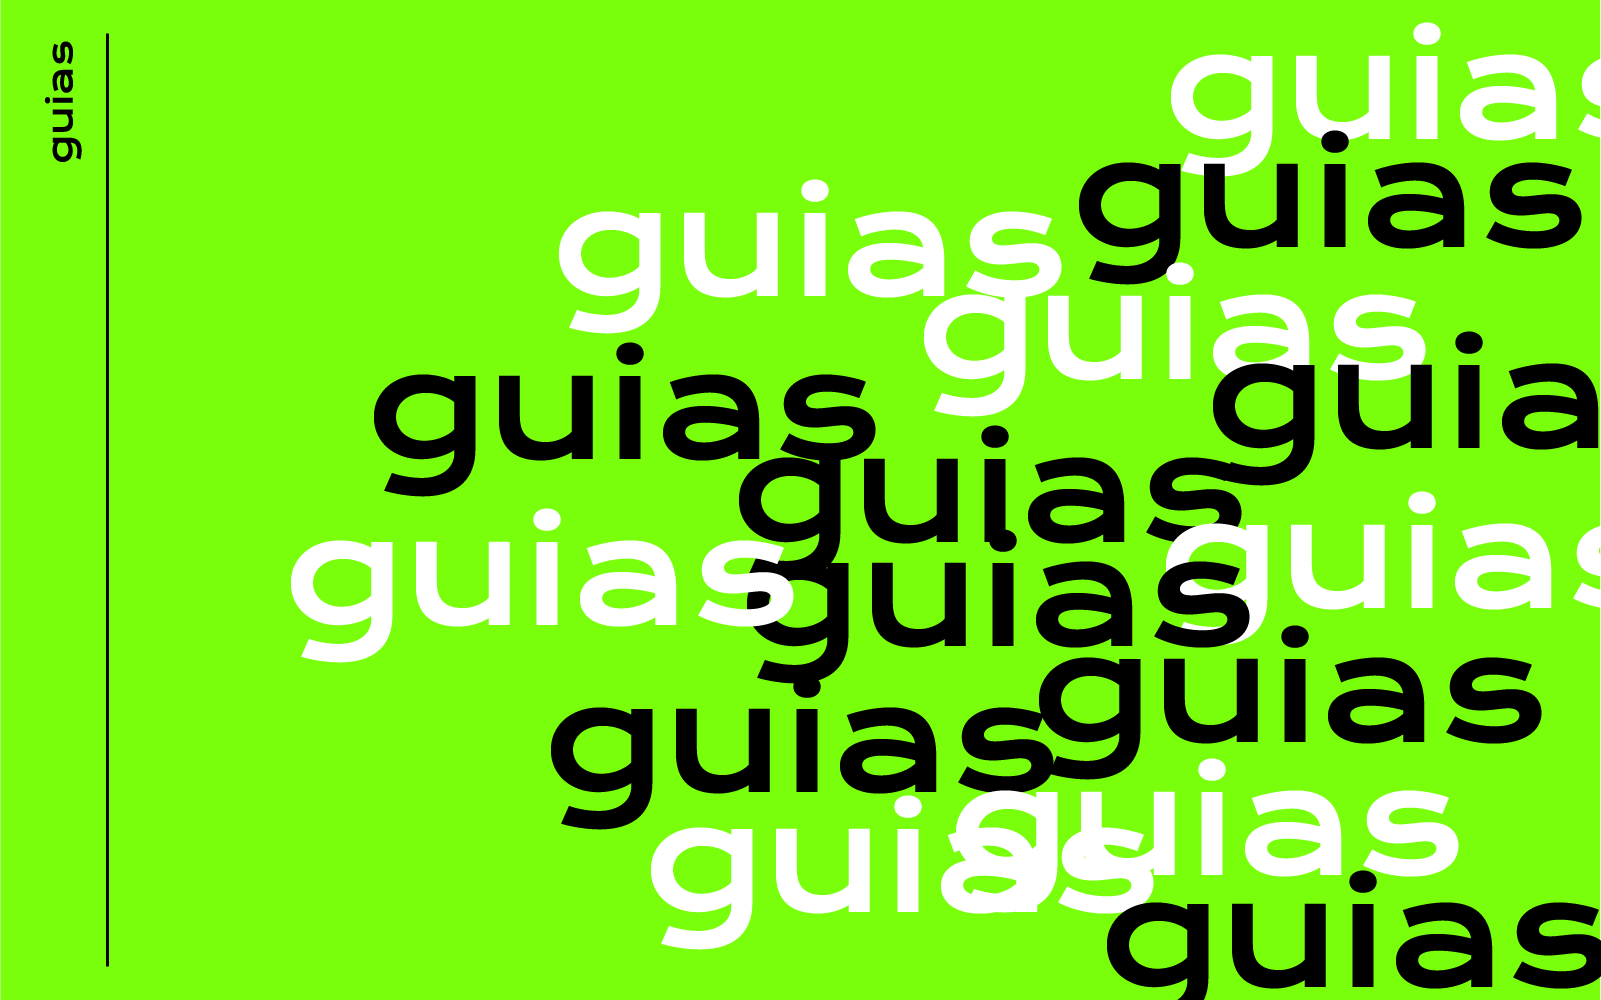 Guias